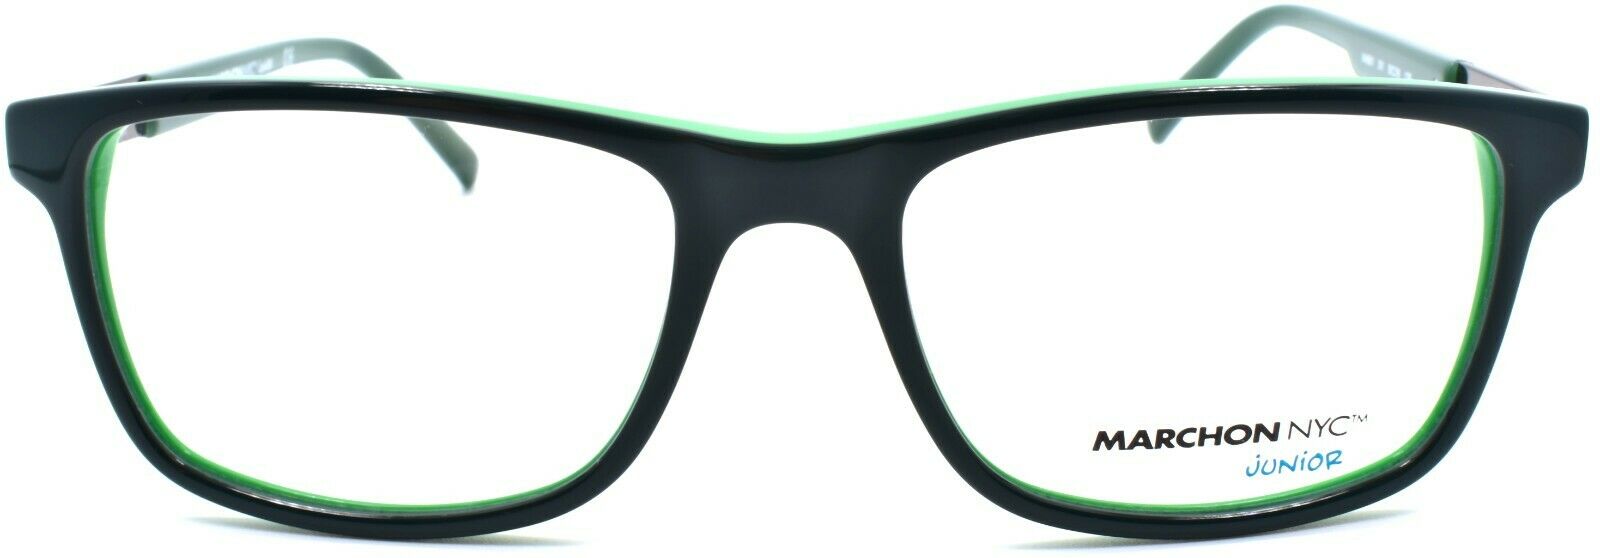 2-Marchon Junior M-6501 301 Kids Boys Eyeglasses Frames 50-16-135 Olive-886895430449-IKSpecs